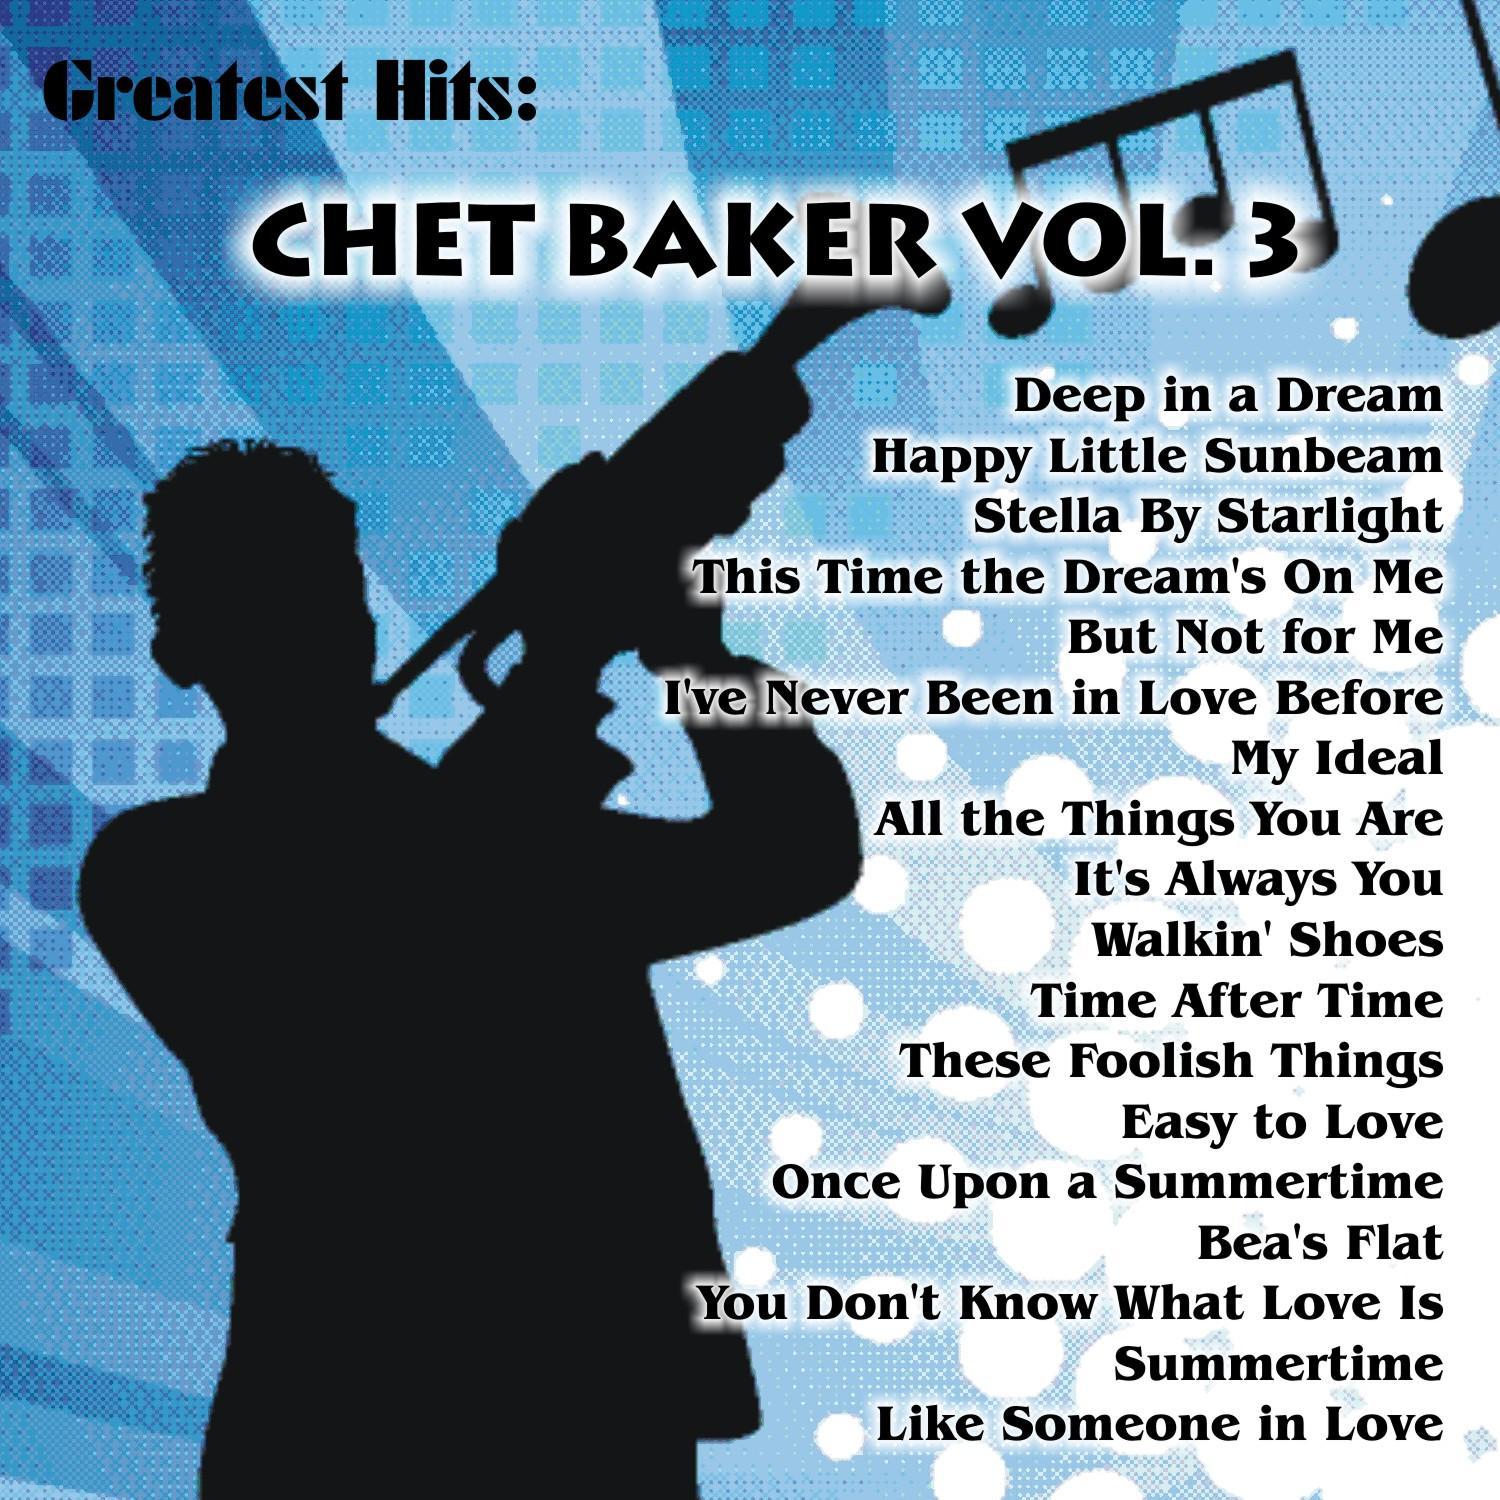 Greatest Hits: Chet Baker Vol. 3